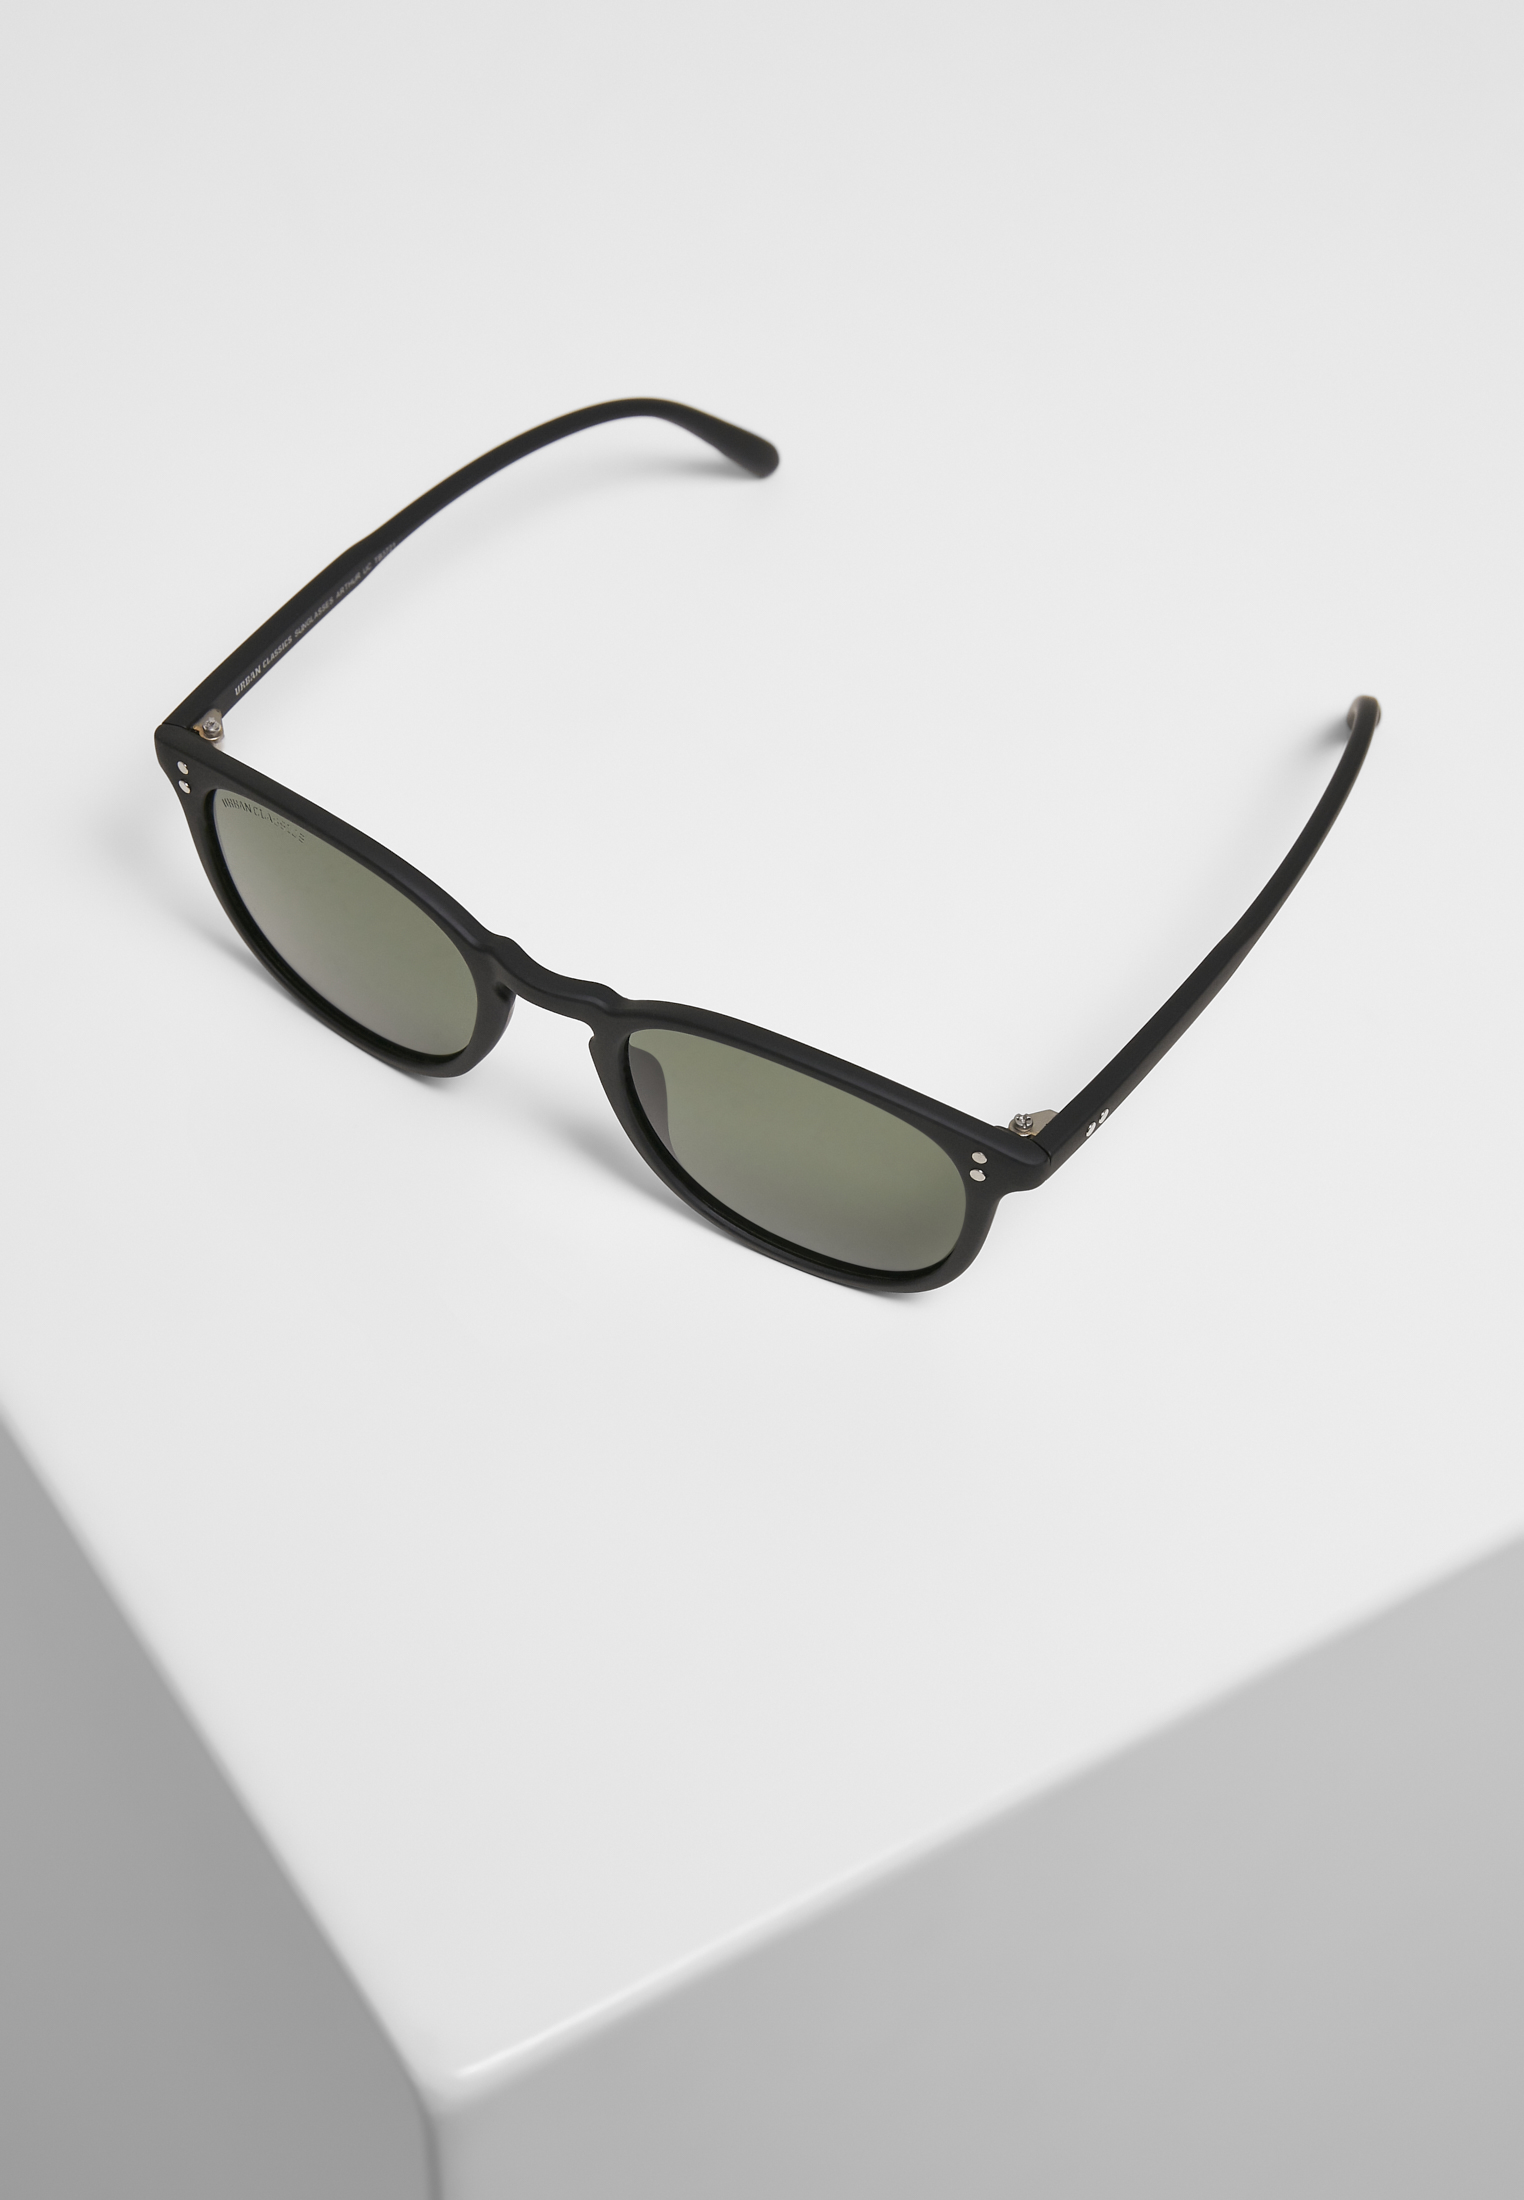 Sonnenbrillen Sunglasses Arthur UC in Farbe black/green